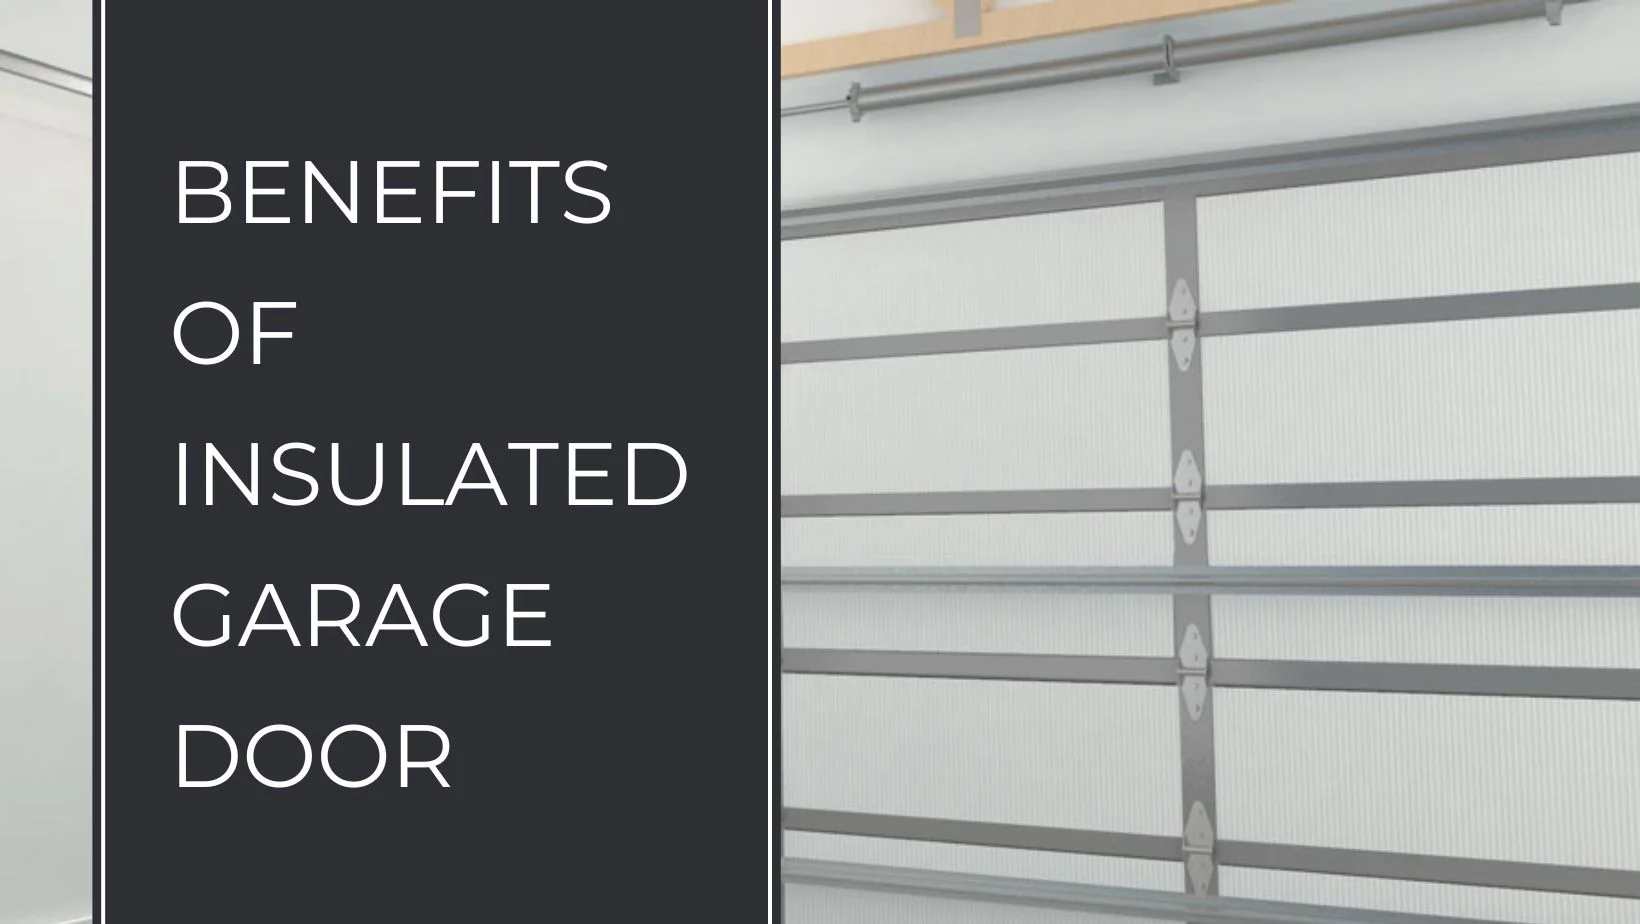 Benefits of Insulated Garage Door